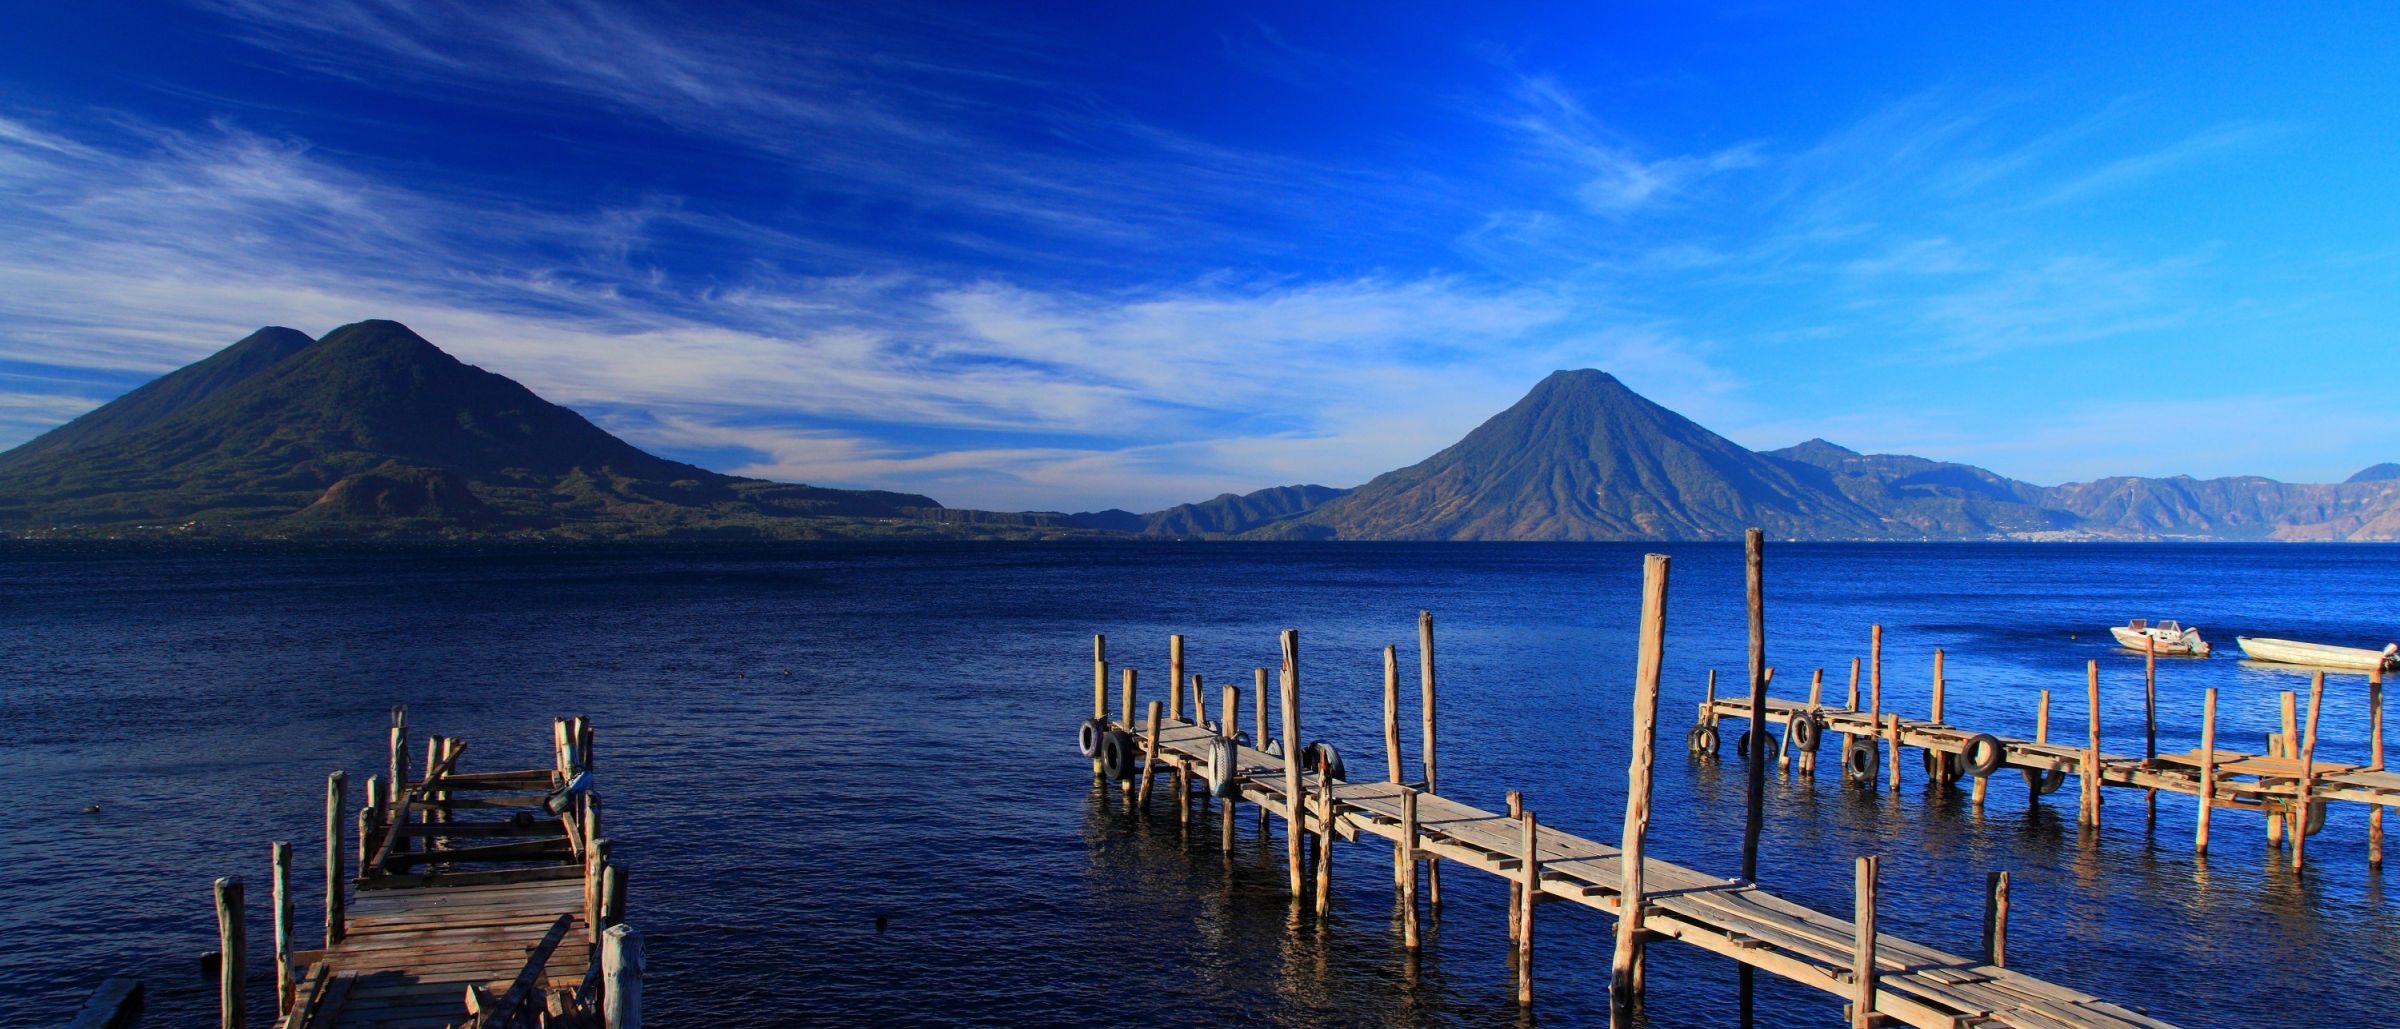 Azurblauer Atitlánsee mit den Vulkanen Tolimán, Atitlán und San Pedro m Hintergrund